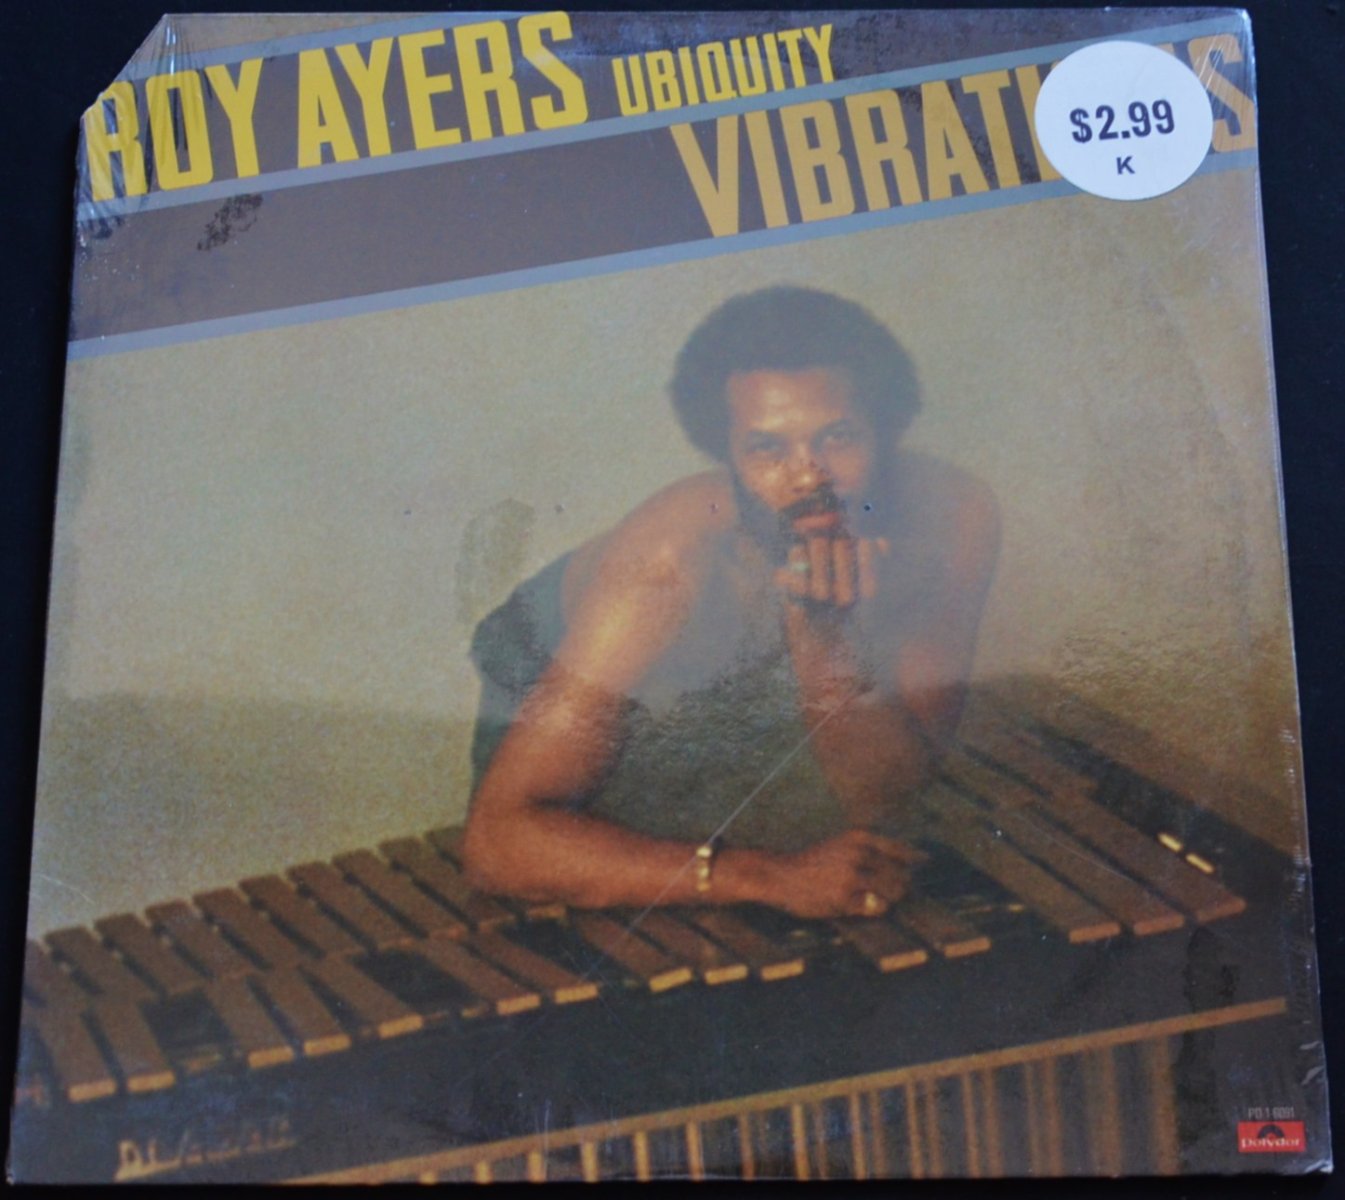 ROY AYERS UBIQUITY / VIBRATIONS (LP)